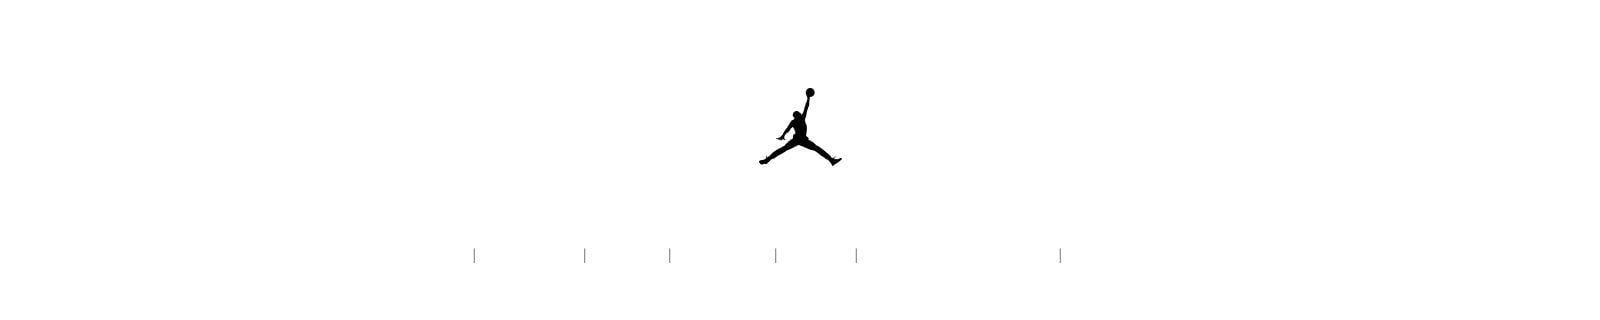 Red and Black Jordan Logo - Jordan Brand. Nike.com